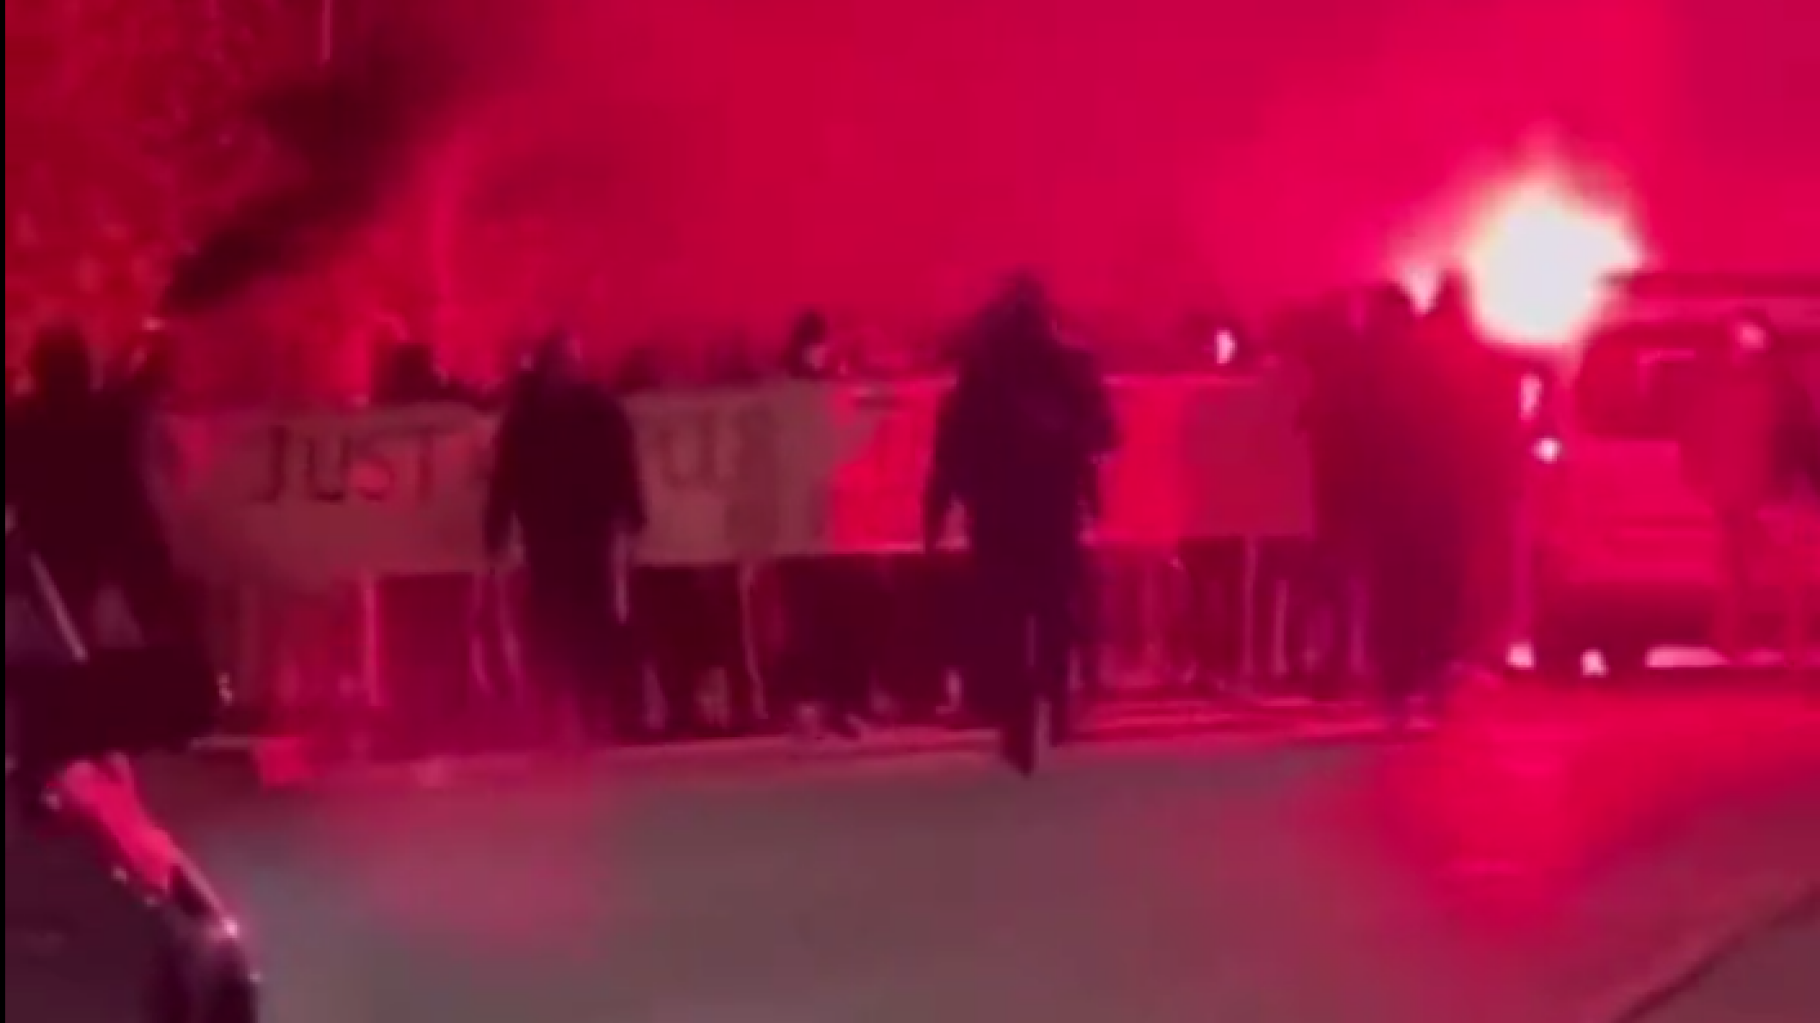 Francia fiatalok behatoltak egy no-go zónába, elegük lett a bevándorlókból + videó